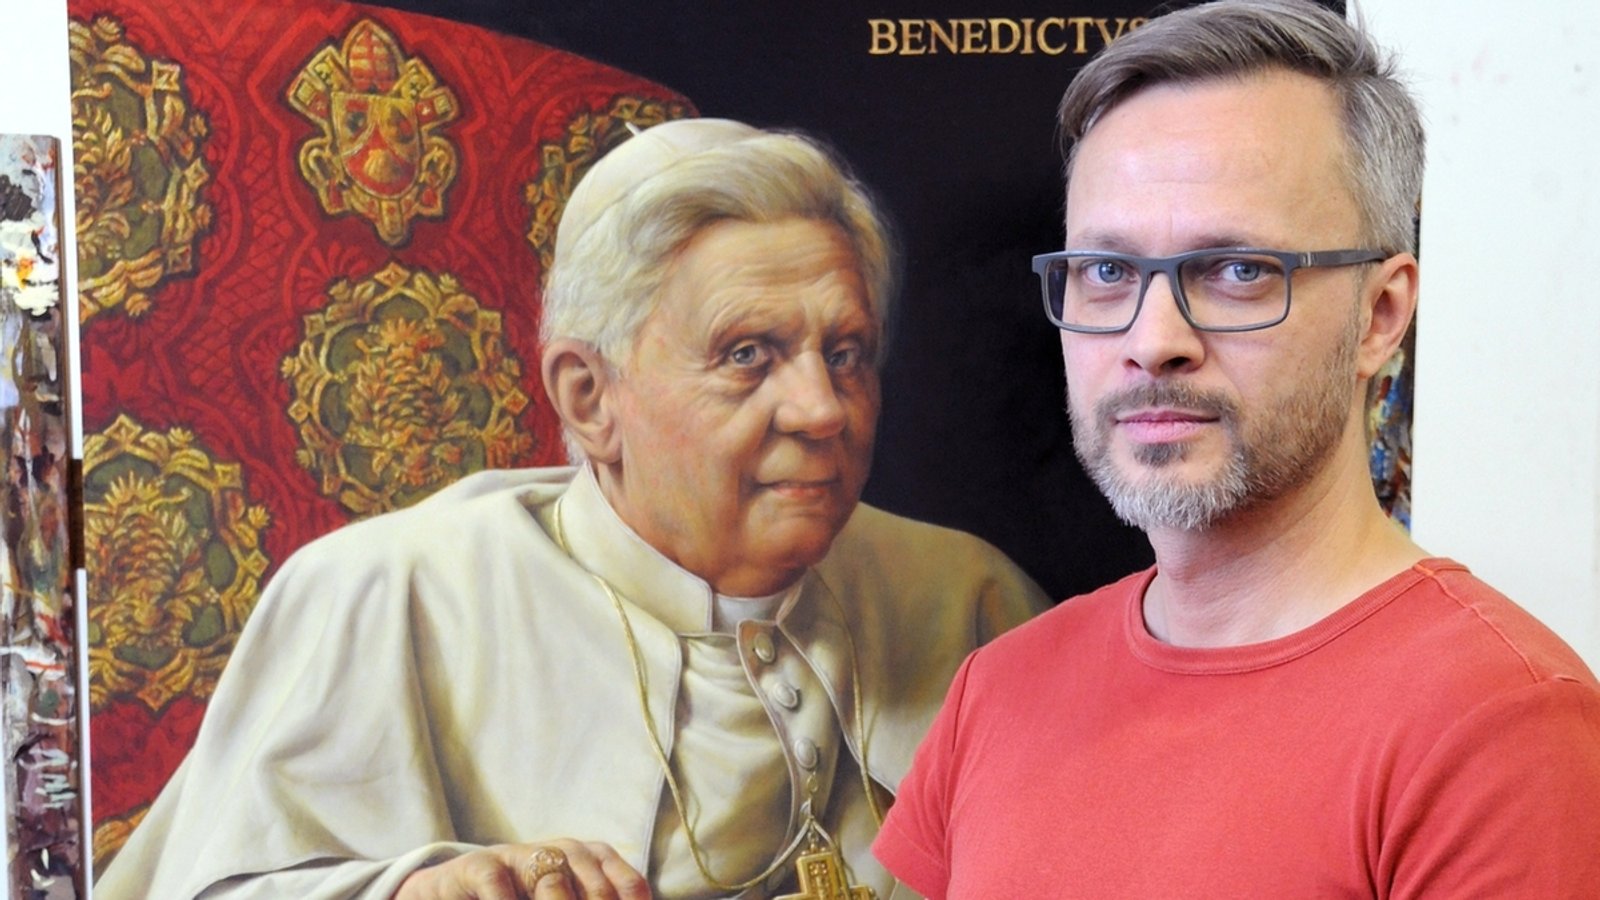 Benedikt-Porträt: Gänswein wollte "Lifting" für den Papst